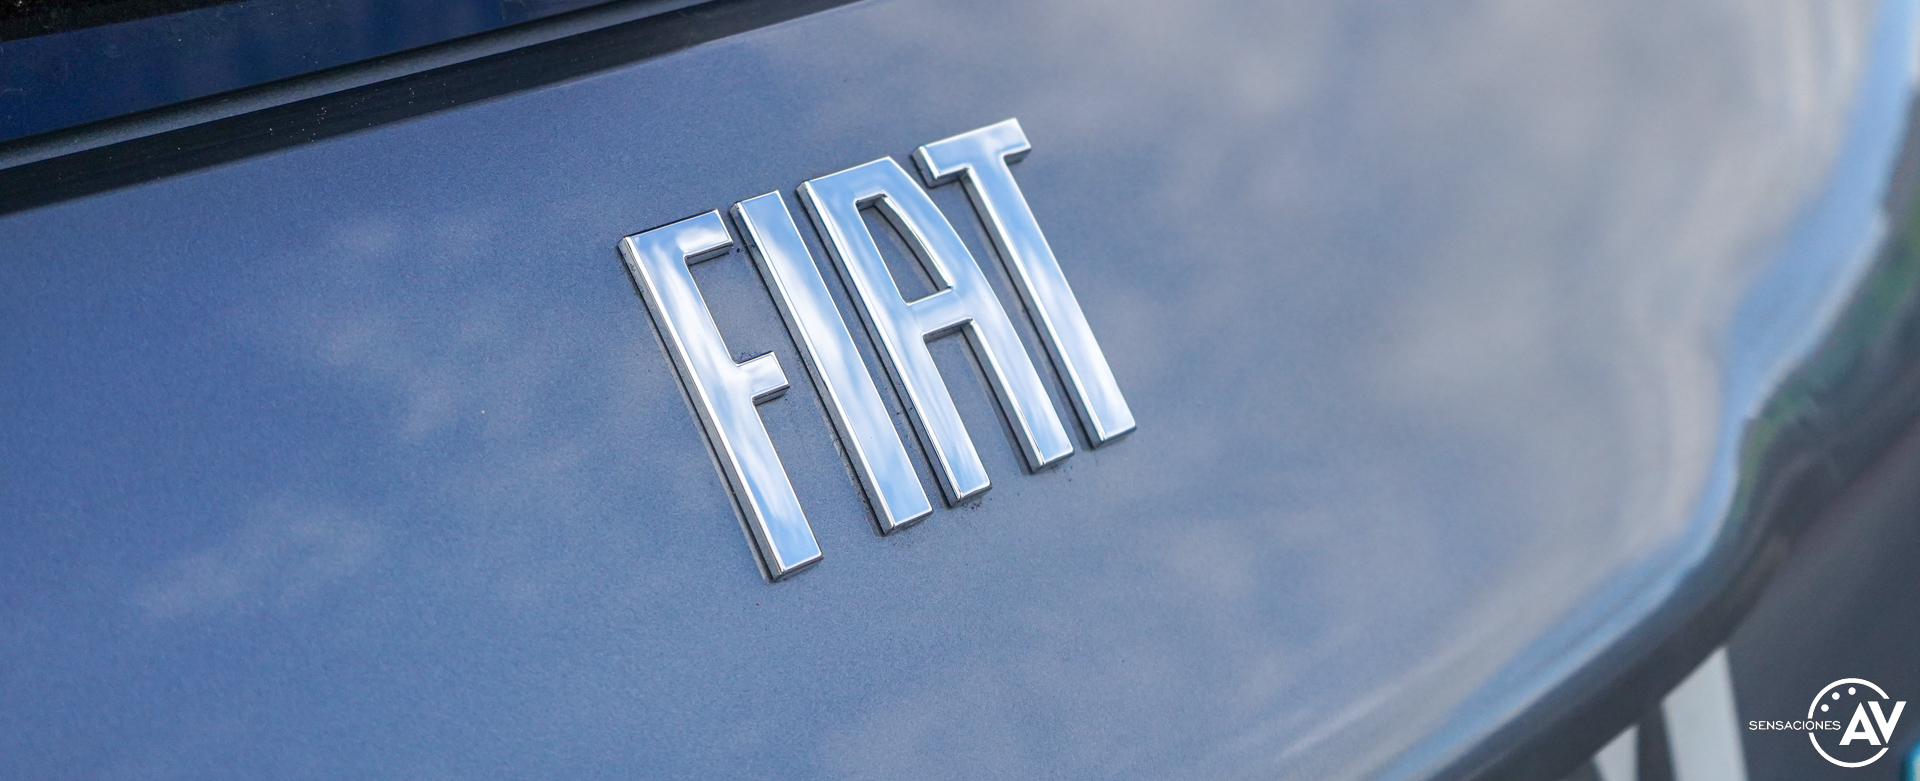 Logo Fiat Fiat 500e - Prueba Fiat 500e: Revolución eléctrica y urbana al más puro estilo italiano